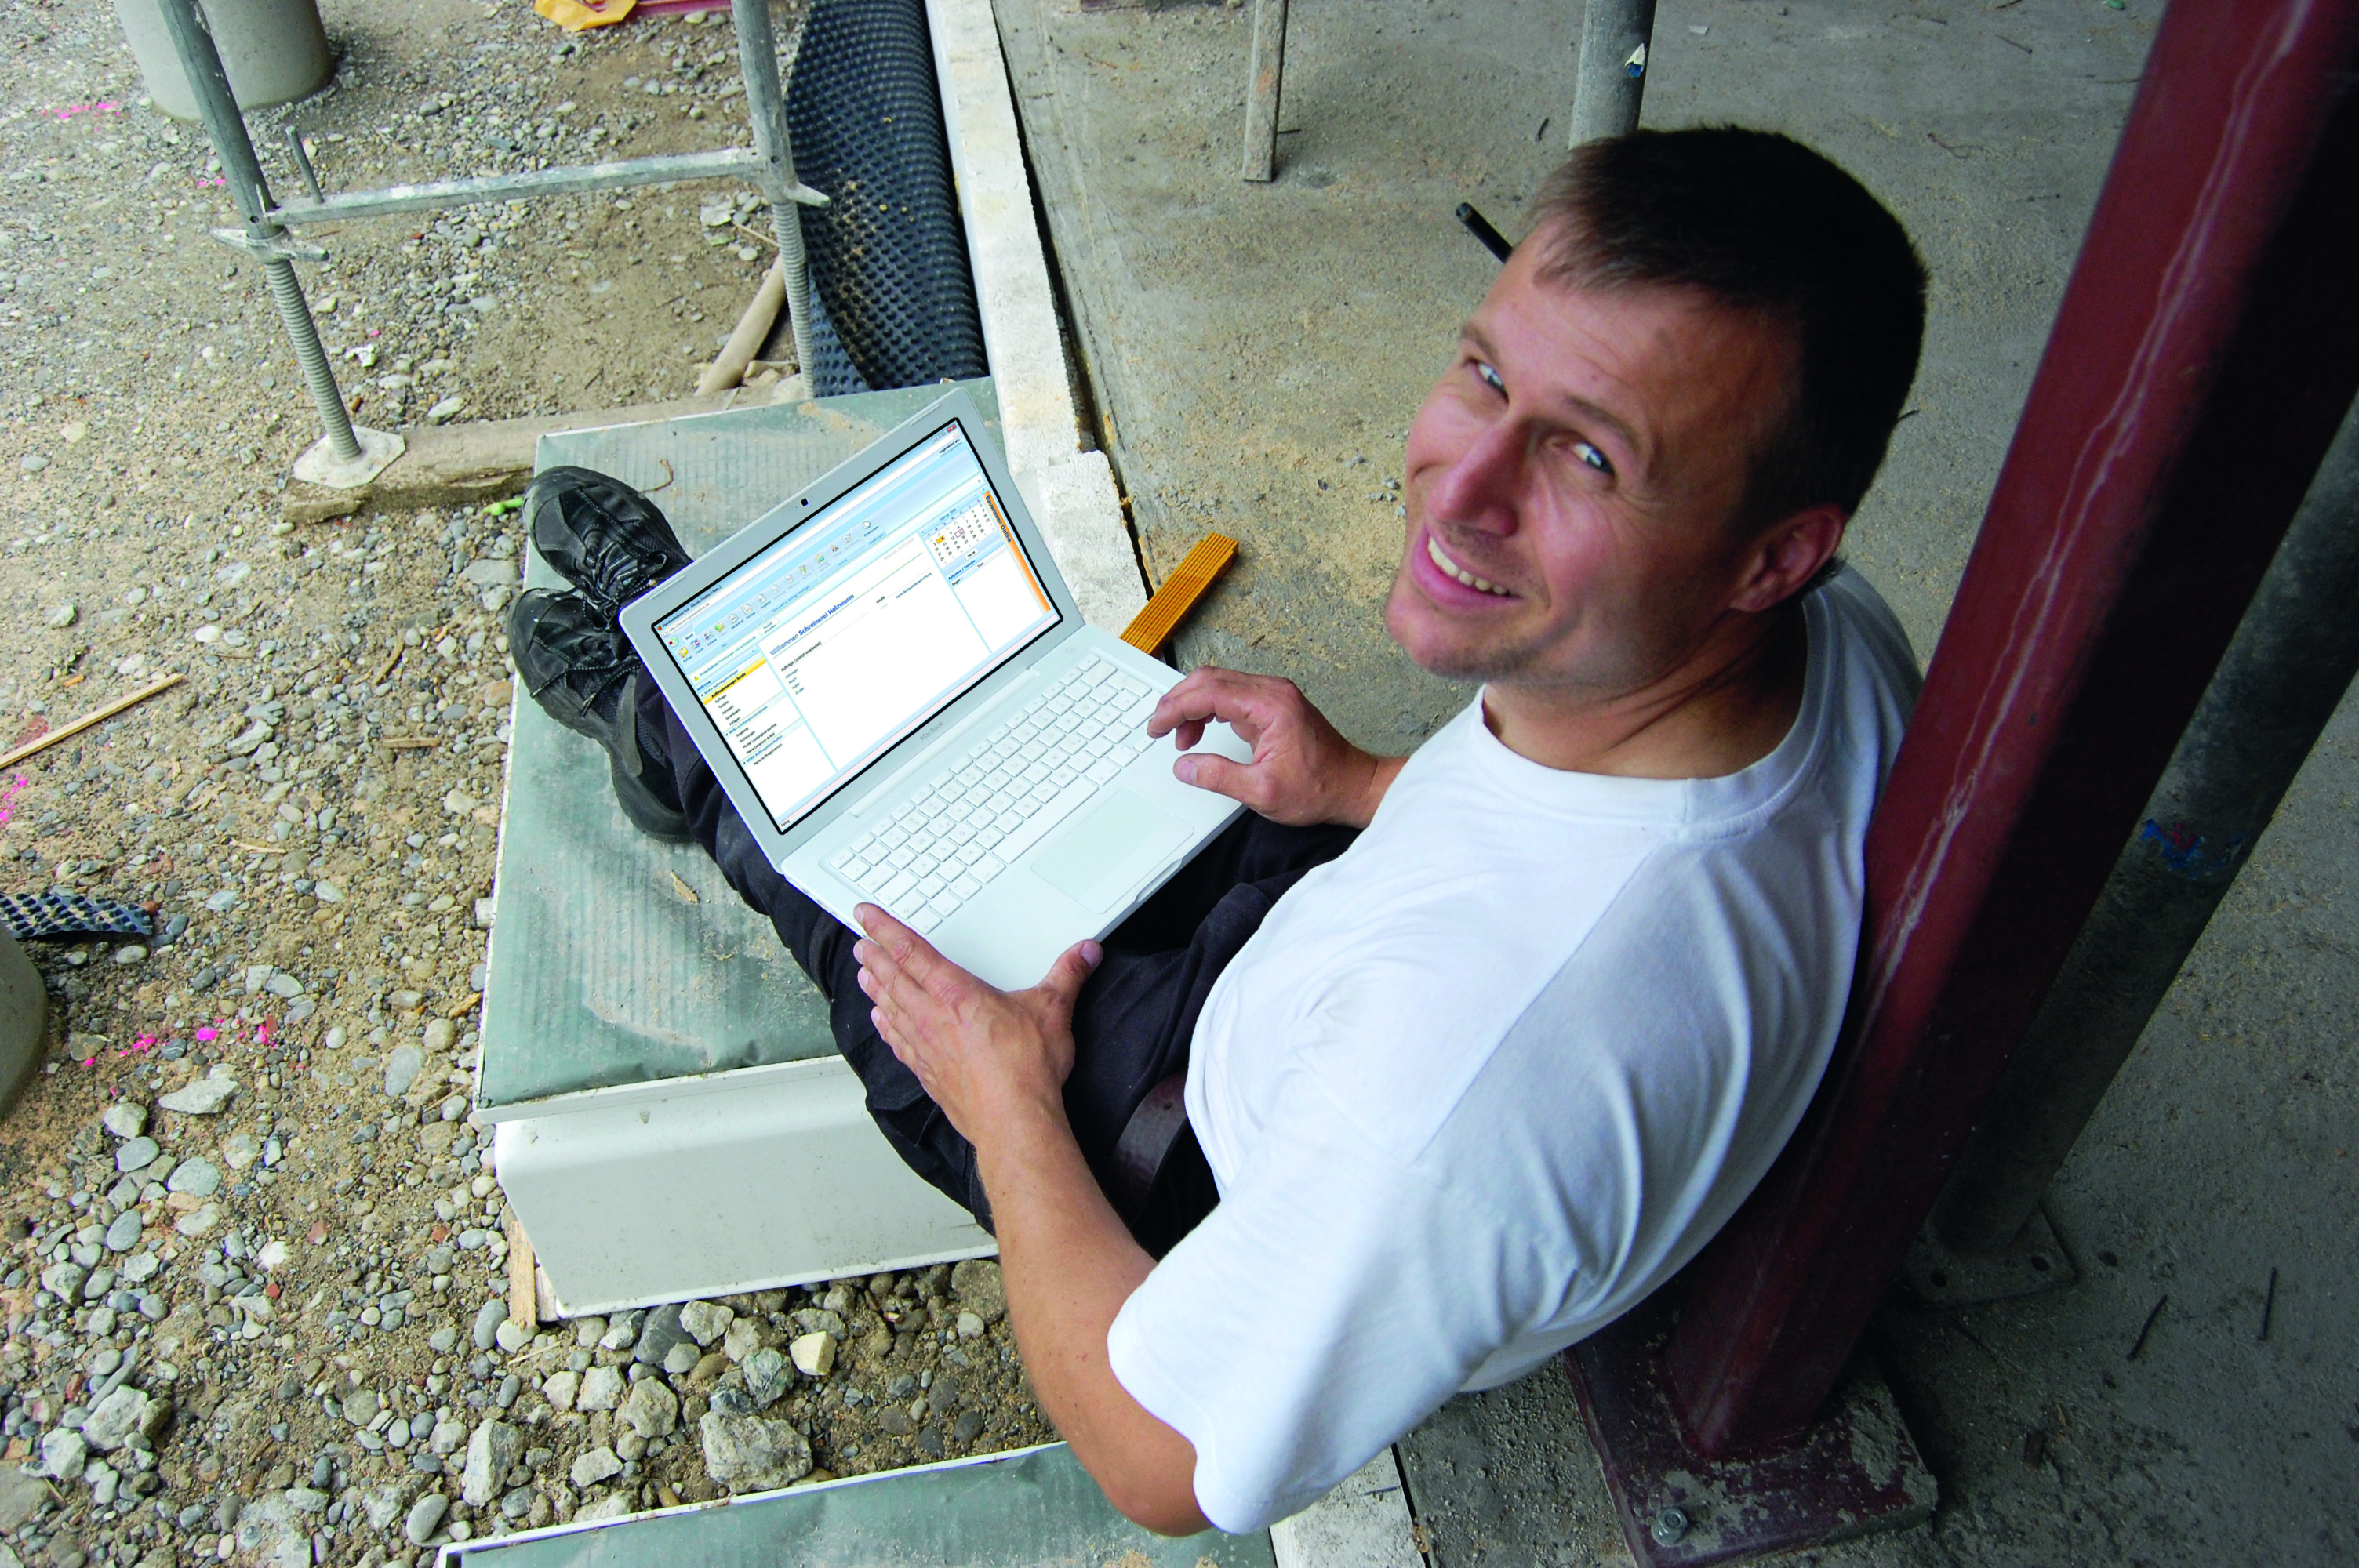 Radnik sjedi na gradilištu sa laptopom u krilu i otvorenom aplikacijom na zaslonu.